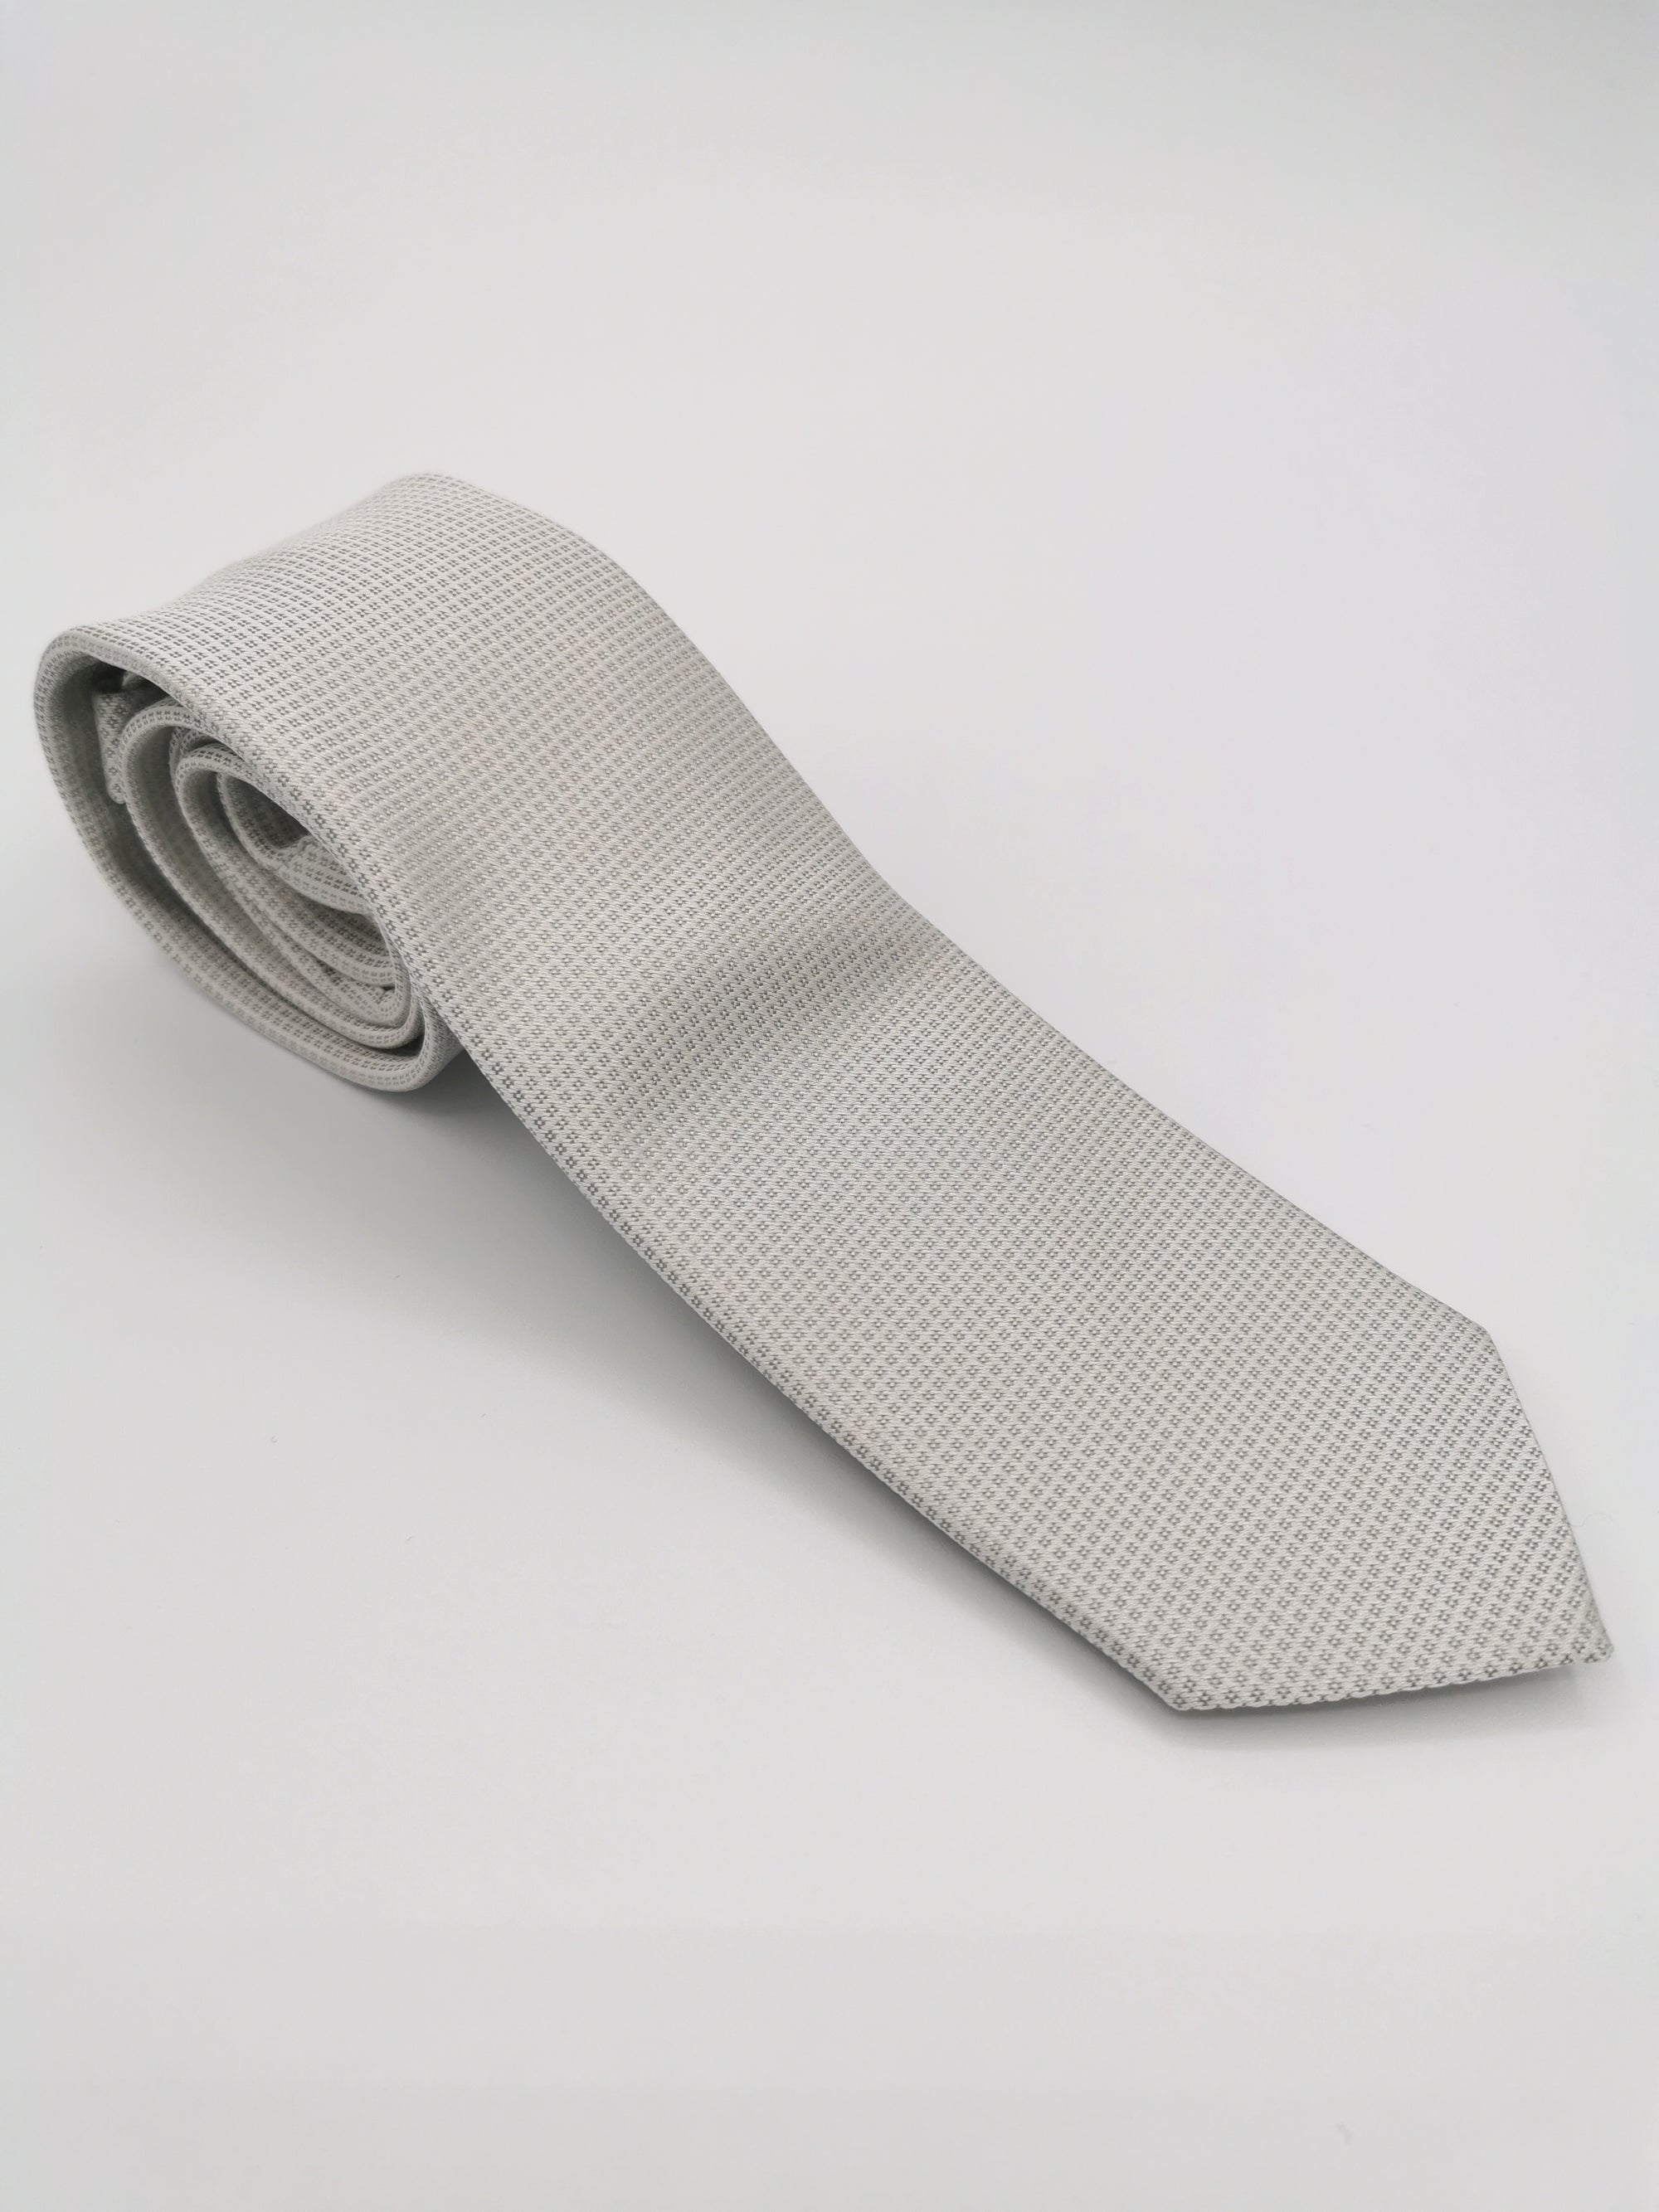 Cravate Ferala grise en soie à motif petits carreaux